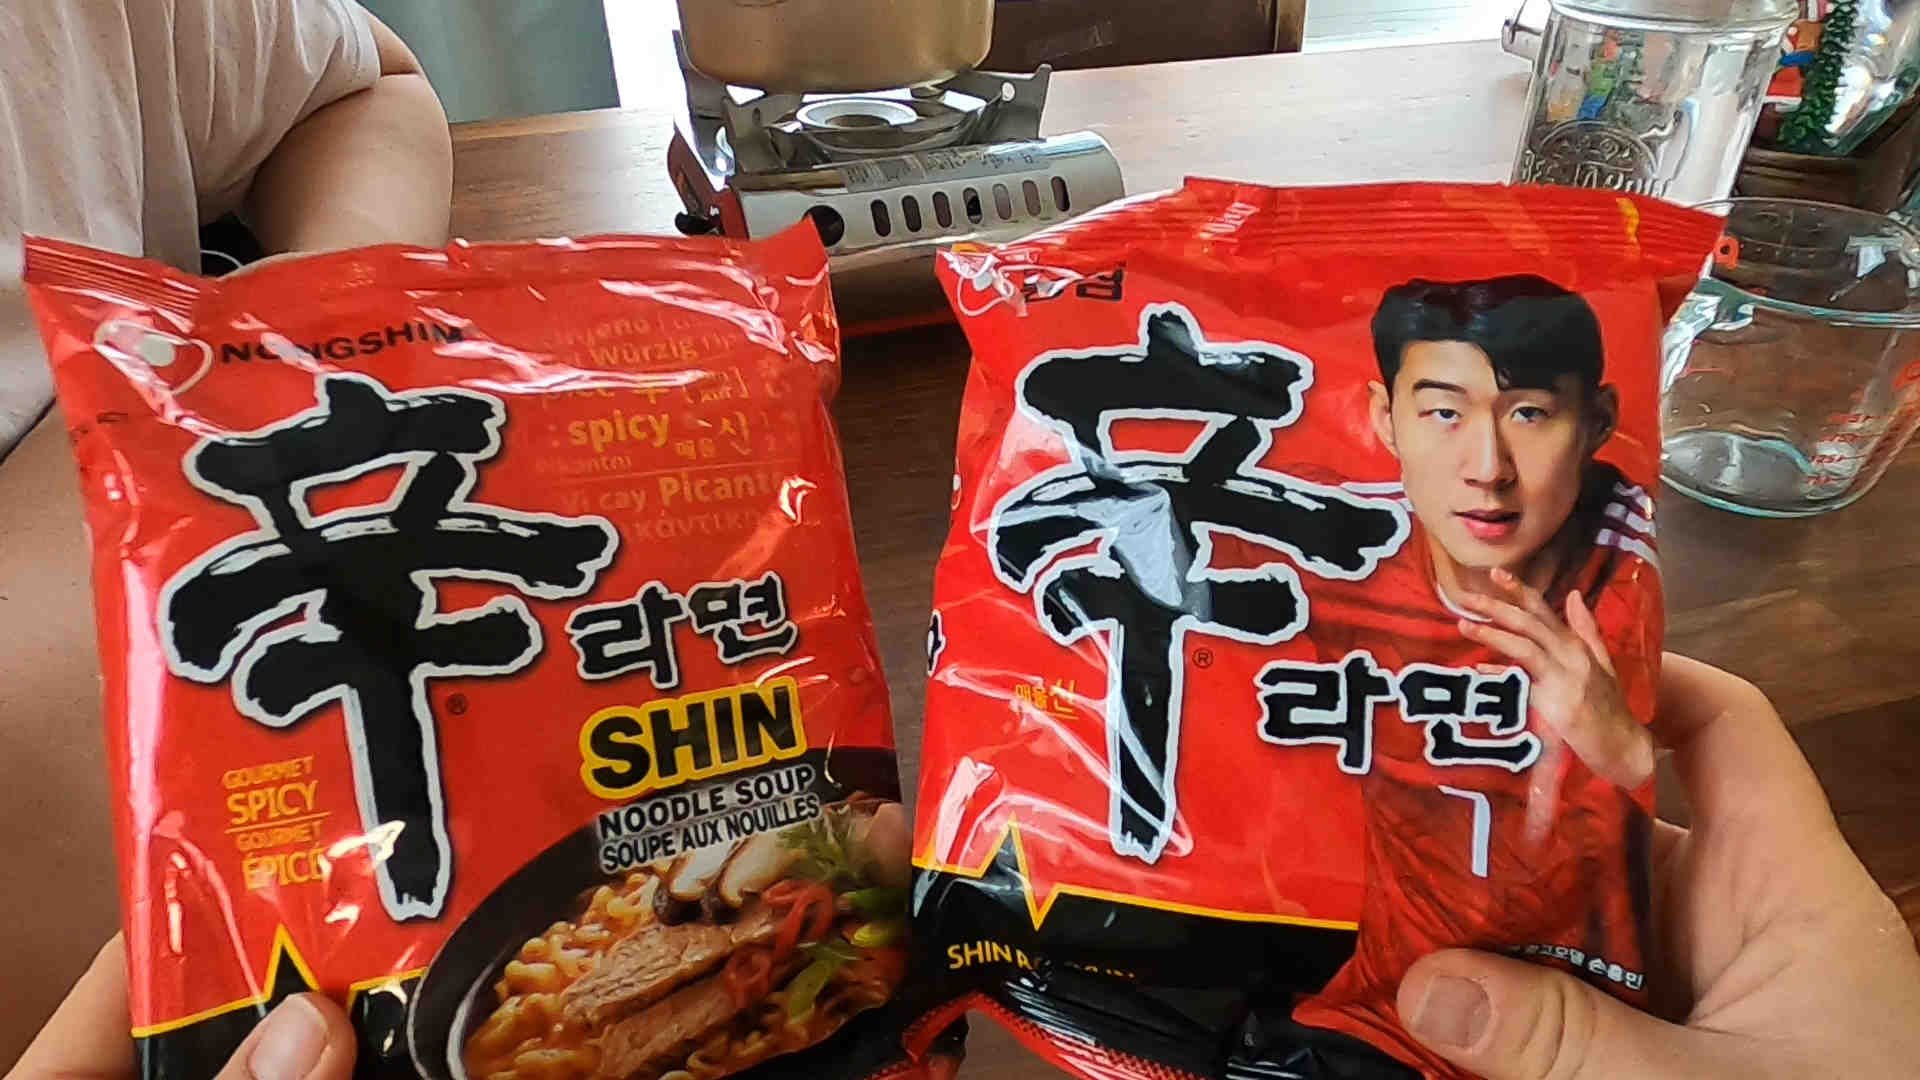 American Nongshim Versus Korean Nongshim: An Instant Noodle Showdown